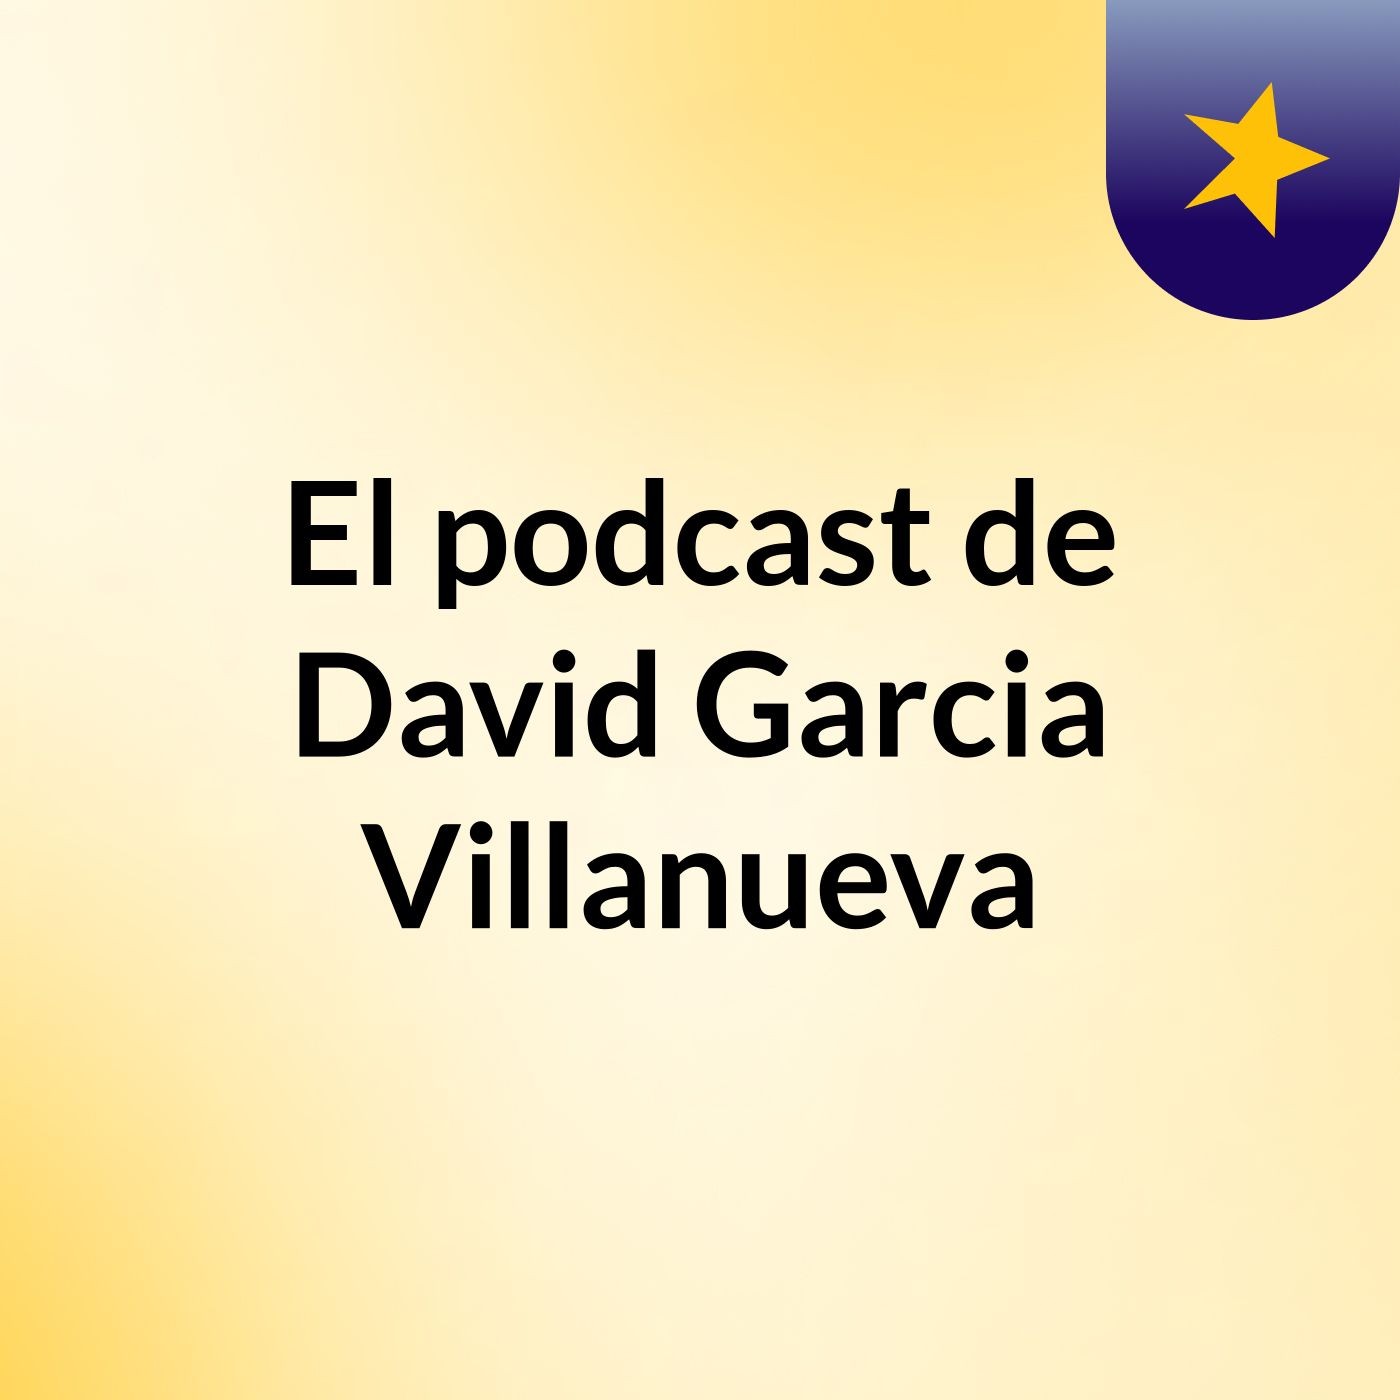 El podcast de David Garcia Villanueva